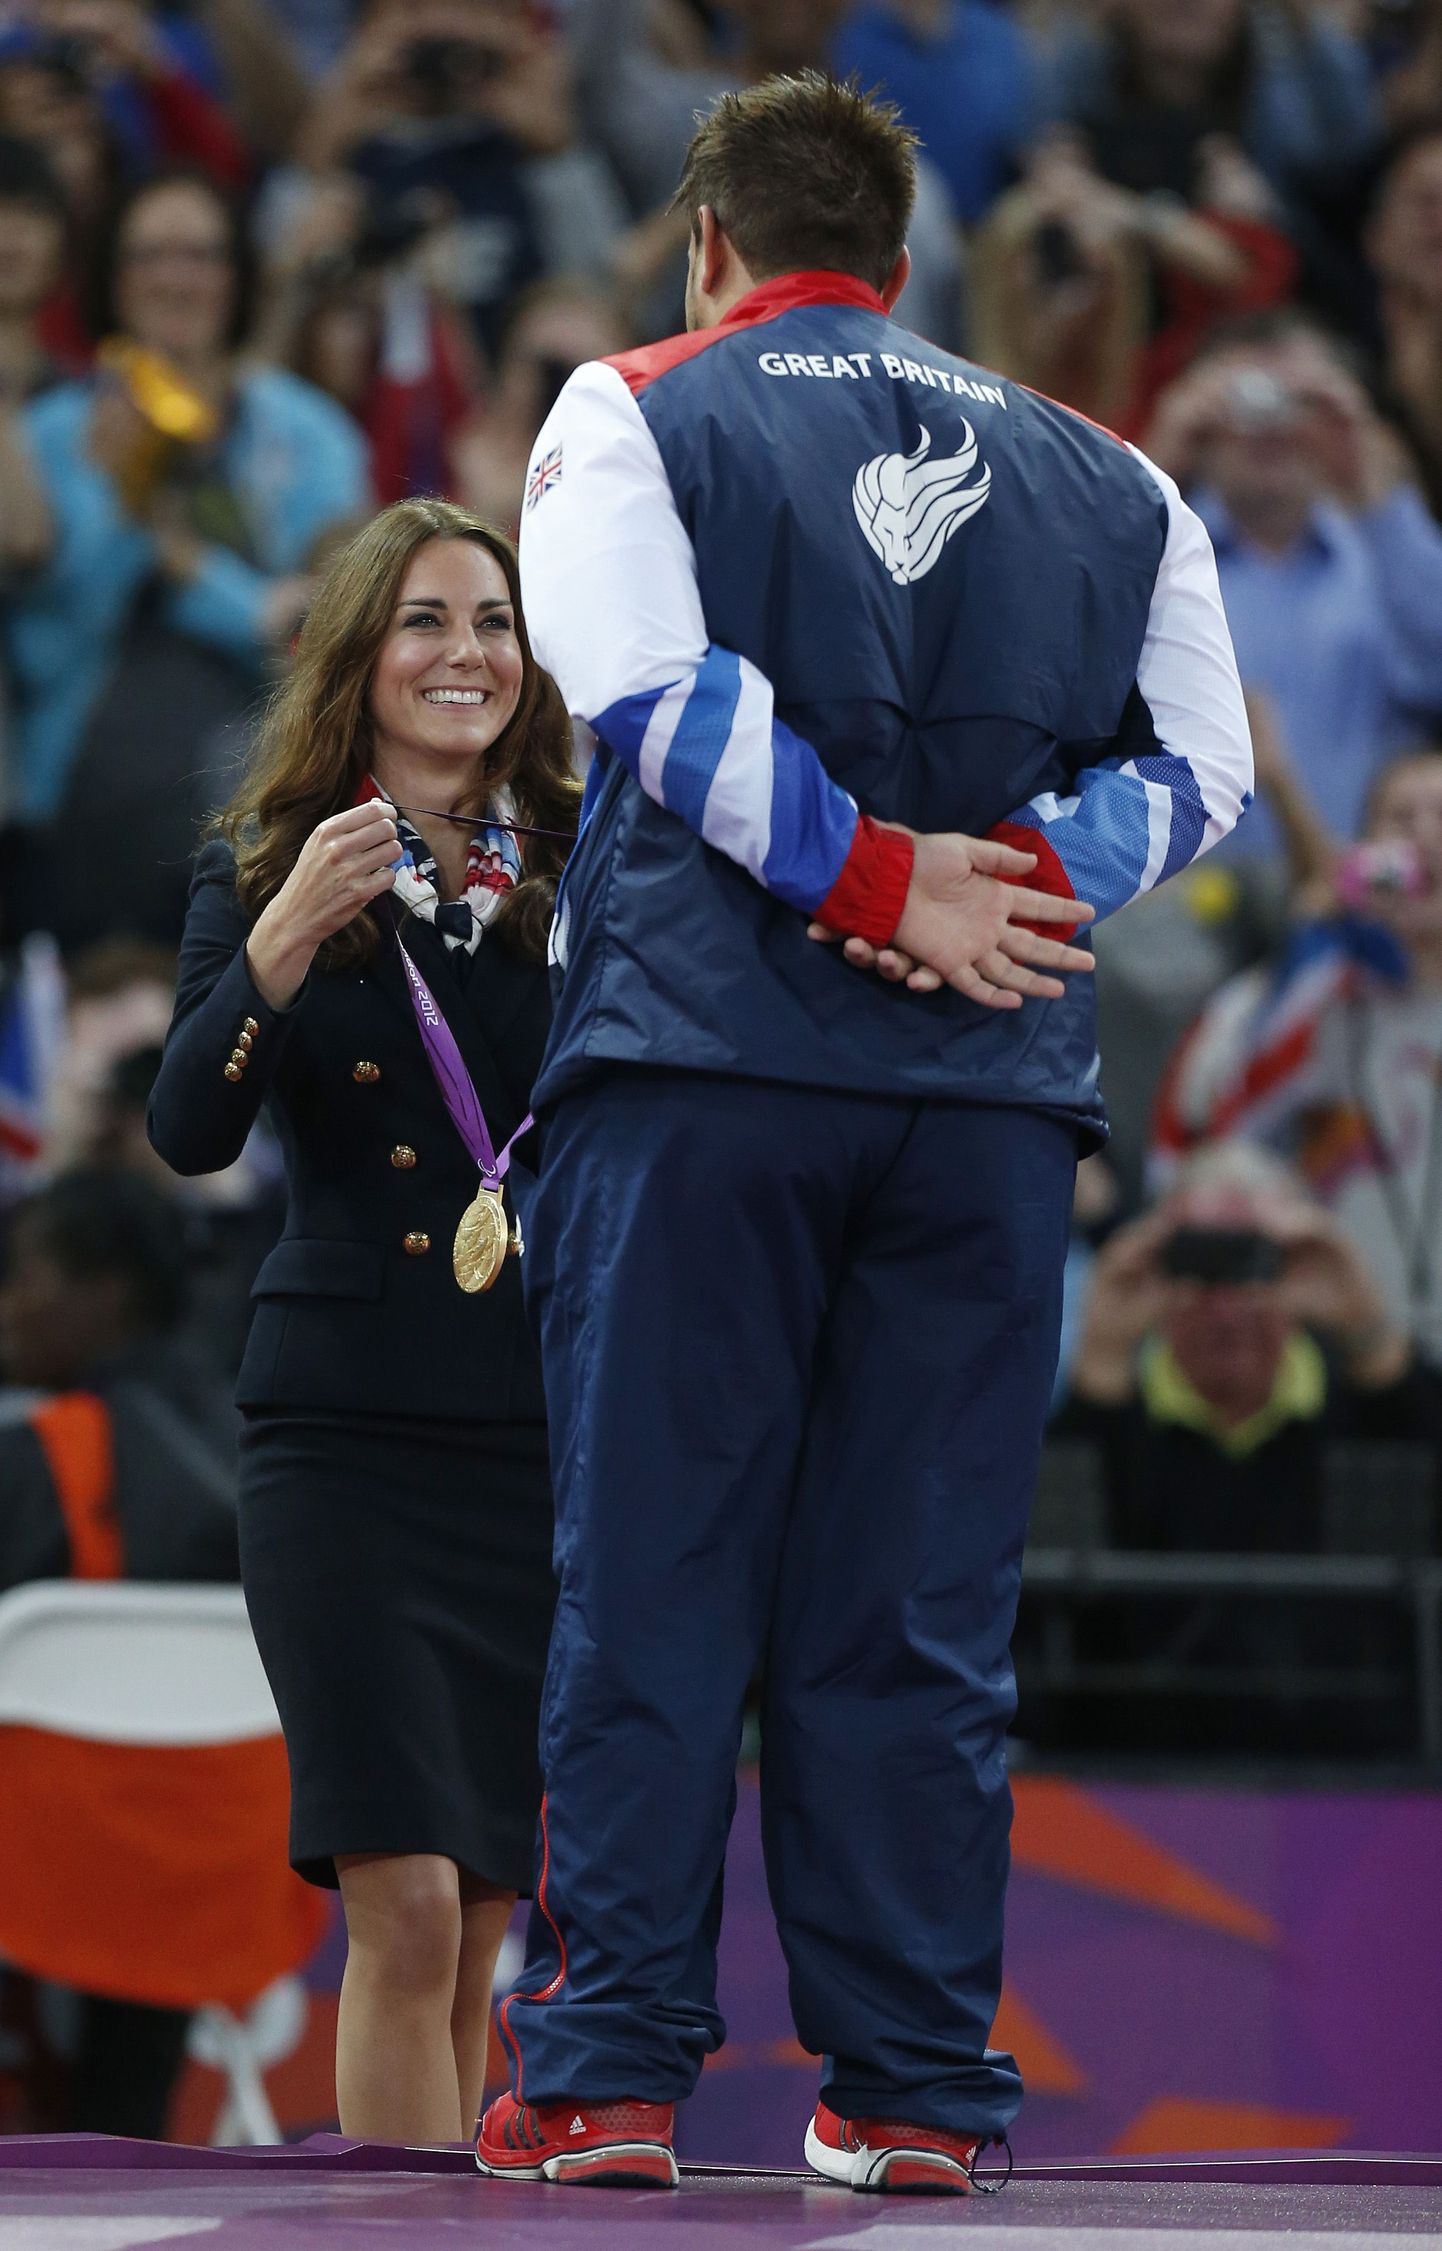 Cambridge'i hertsoginna asetamas Londoni paraolümpiamängudel medalit kaela kettaheites kuldmedali võitnud Aled Davies'ile.